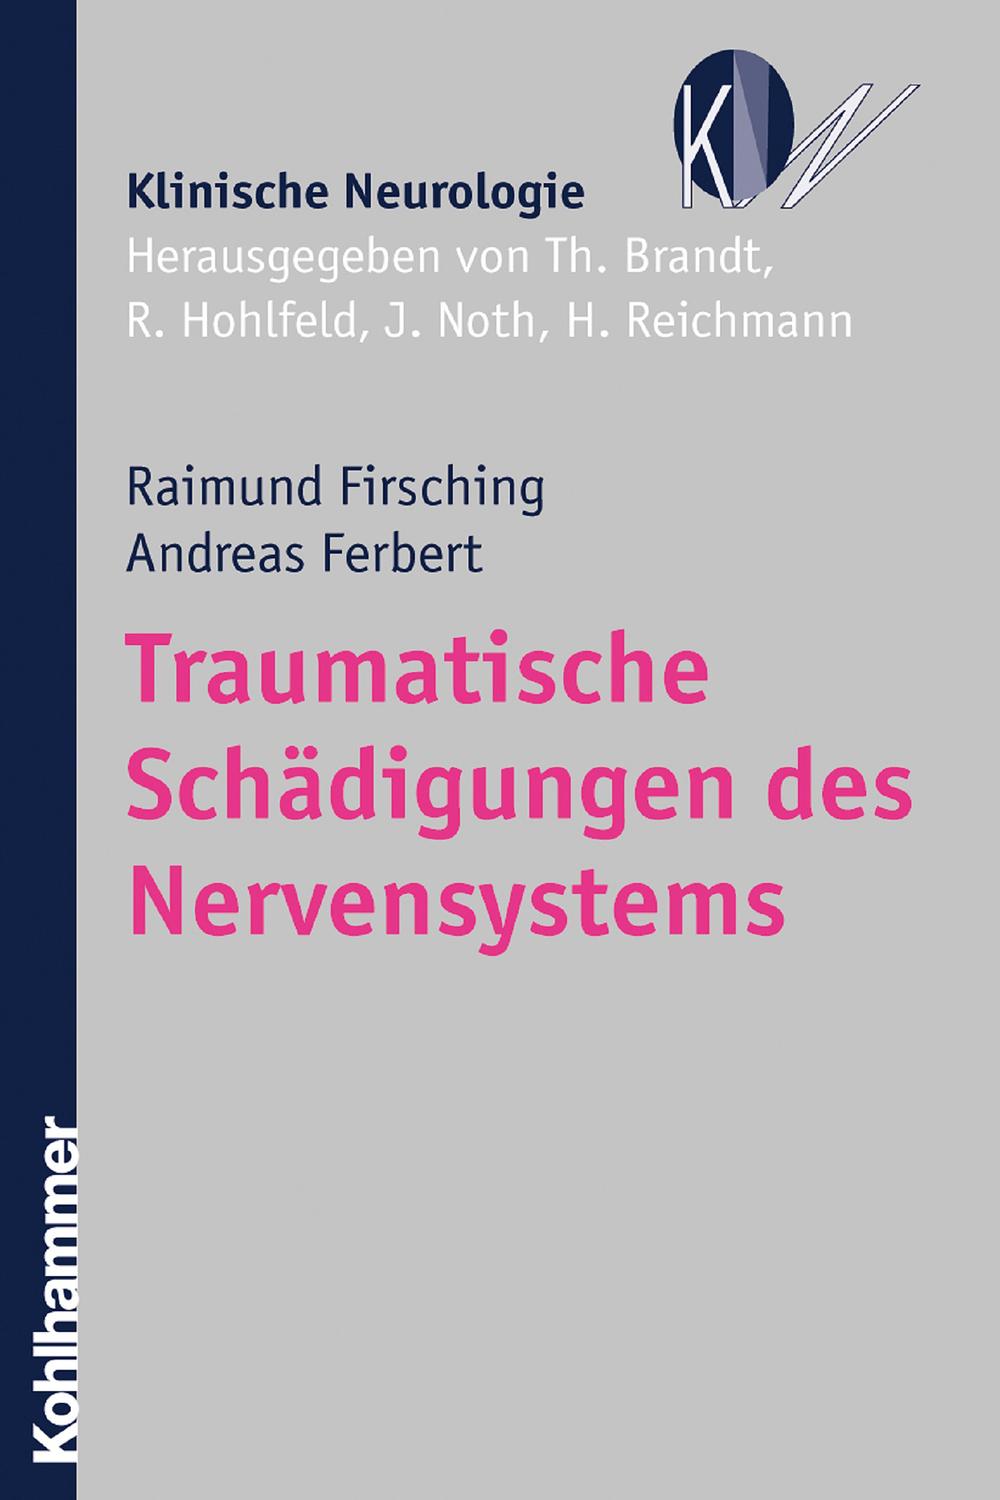 Traumatische Schädigungen des Nervensystems - Raimund Firsching, Andreas Ferbert, Thomas Brandt, Reinhard Hohlfeld, Johannes Noth, Heinz Reichmann